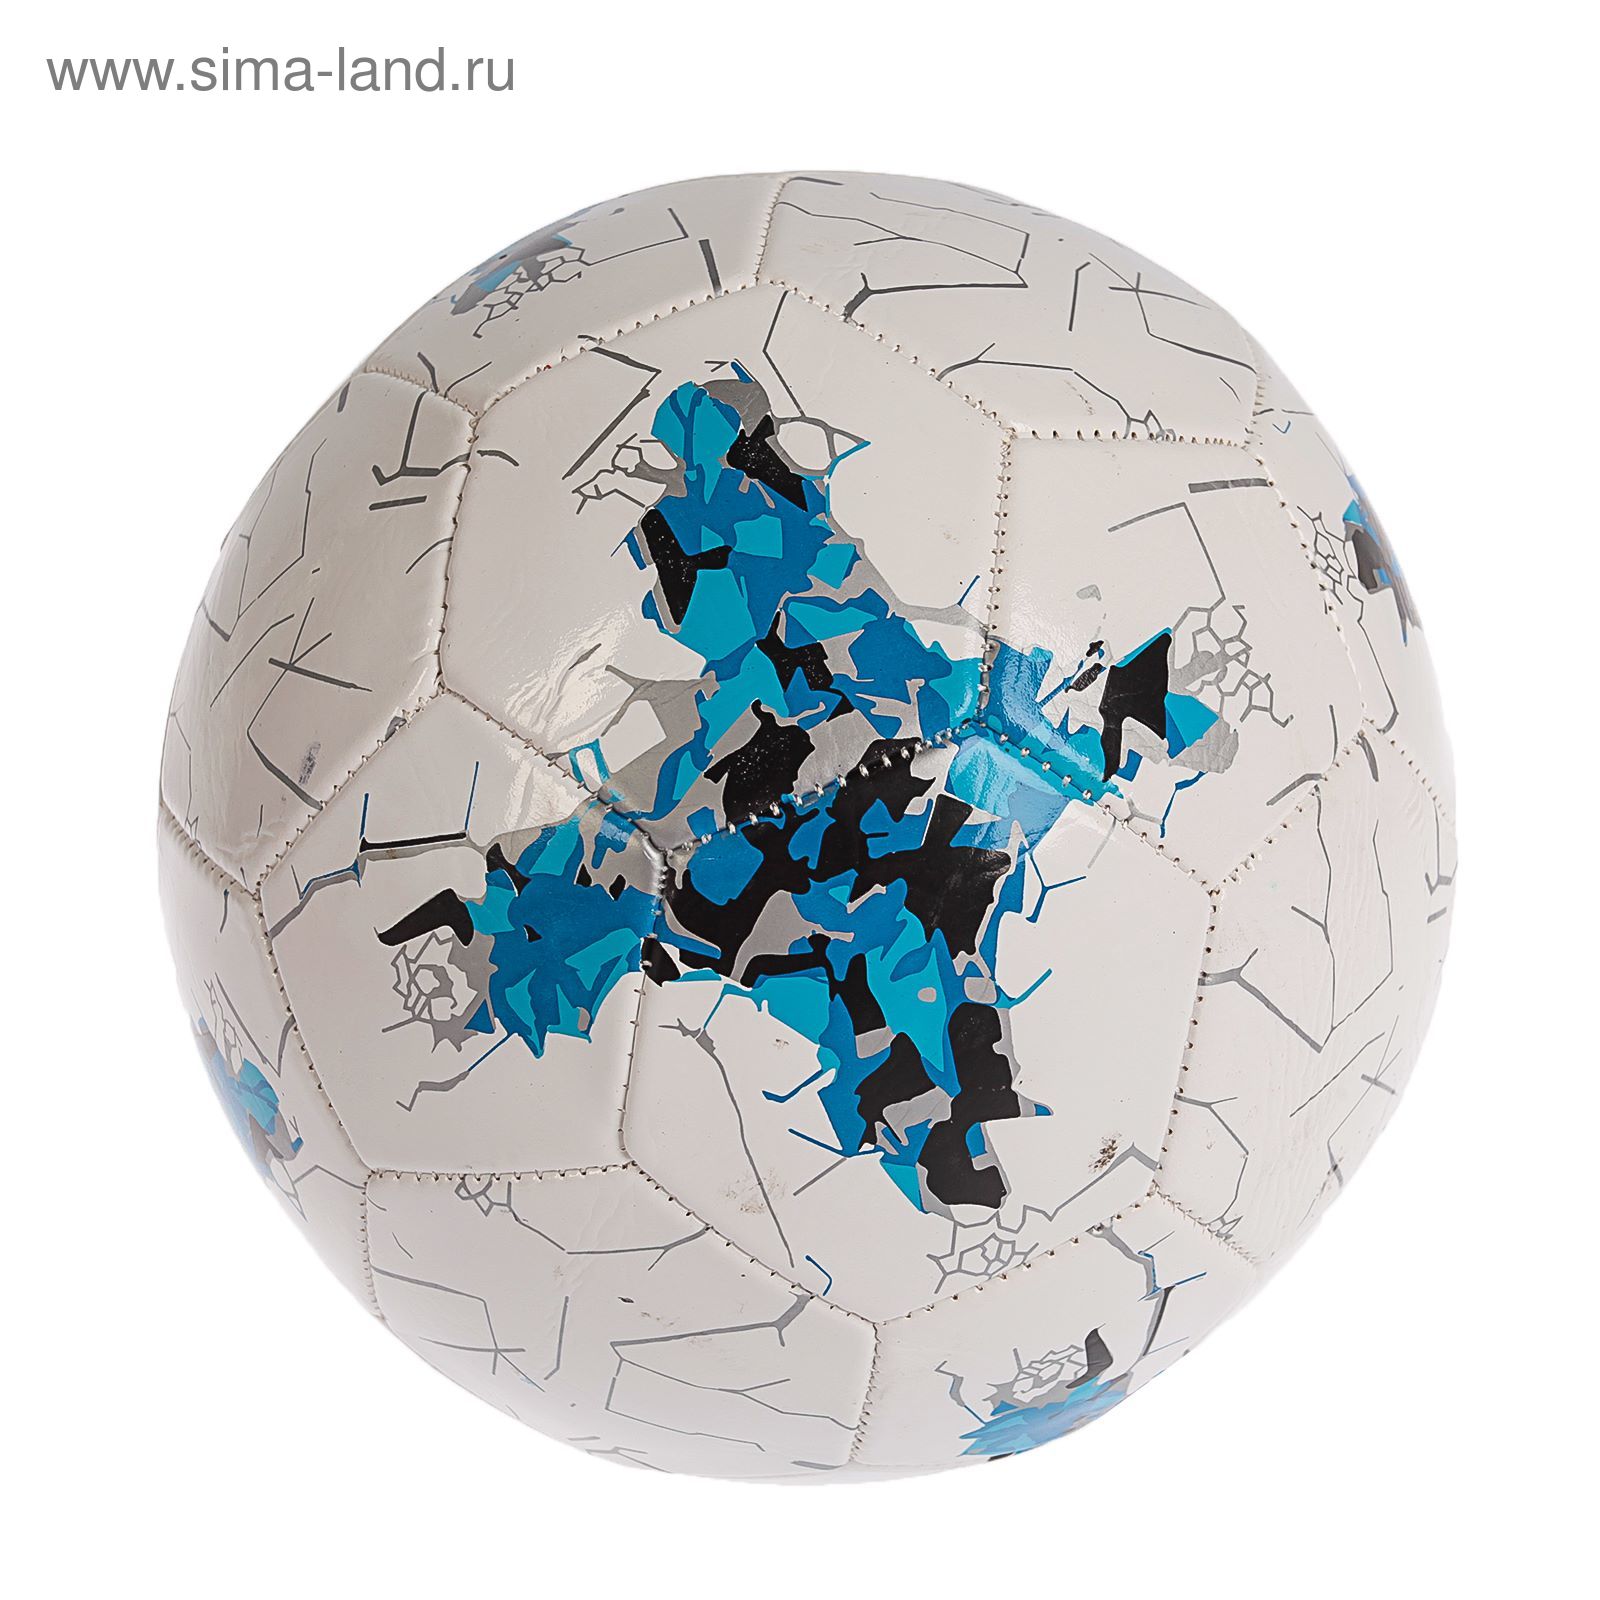 Мяч футбольный р.5, 32 панели, маш.сшивка 260 гр, цвет бело-синий